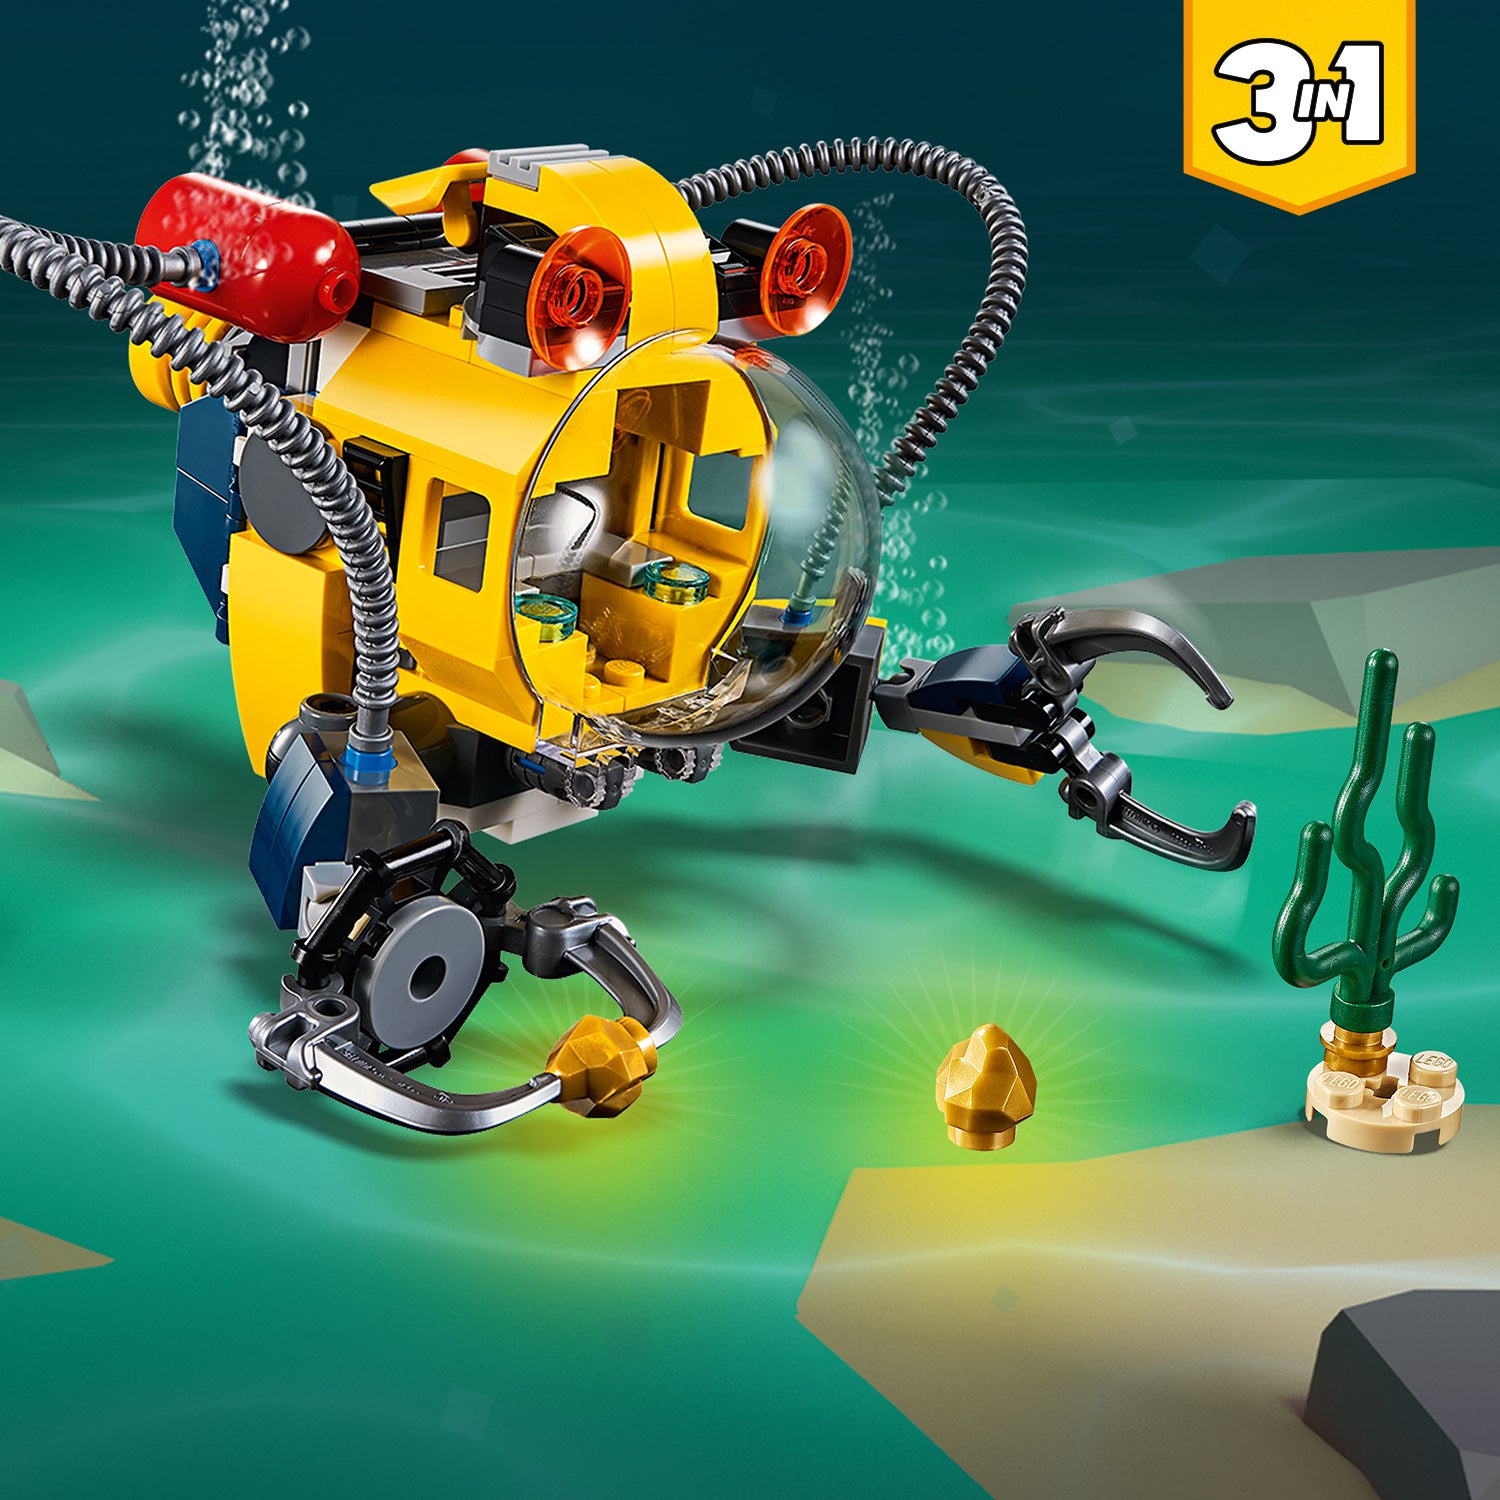 LEGO® Creator 3in1 Underwater Robot Set 31090 Default Title